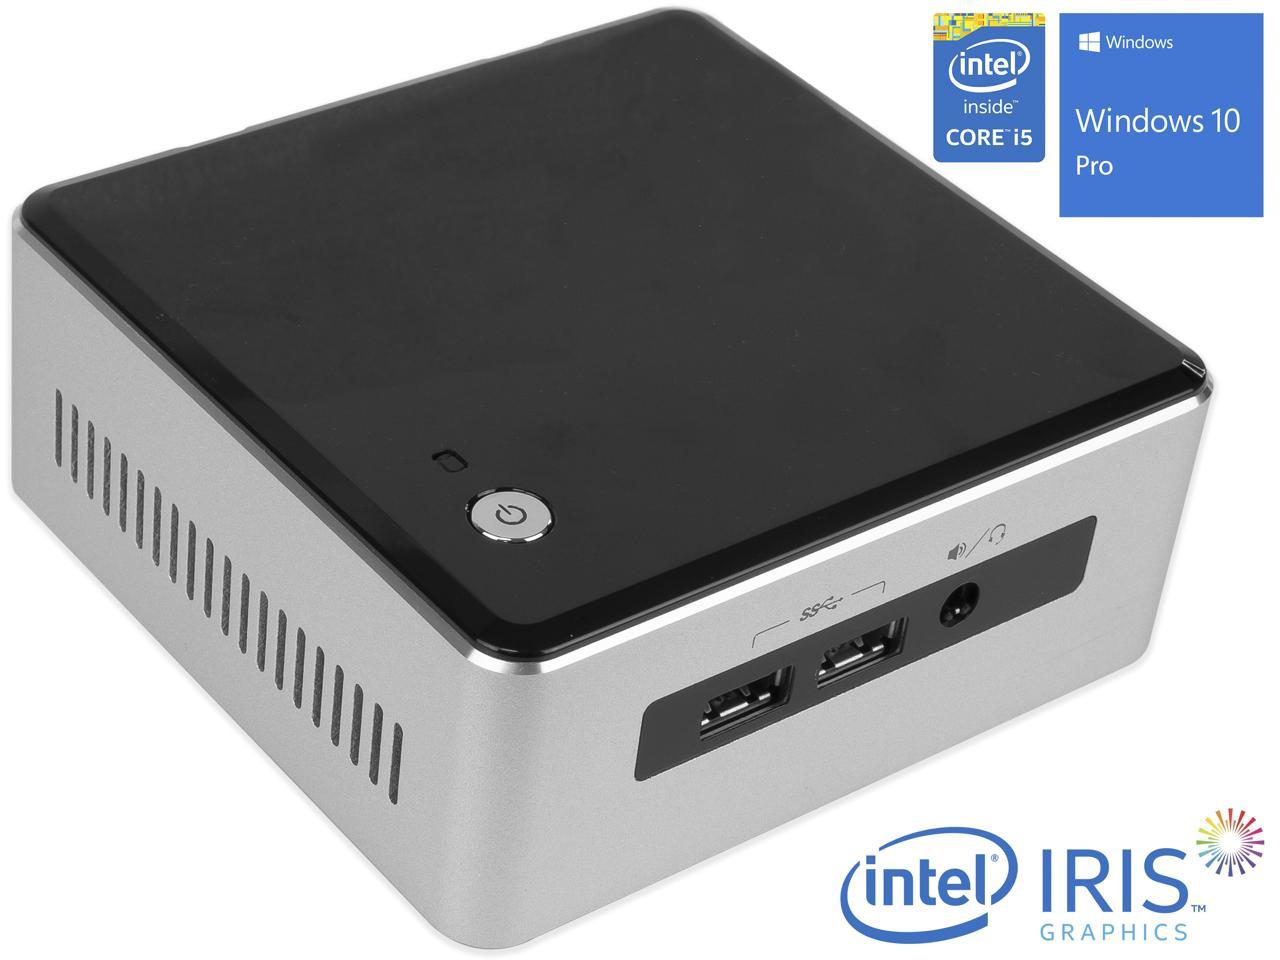 Intel NUC5i5RYH Mini PC, Intel Core i5-5250U Upto 2.7GHz, 4GB RAM, 128GB SSD, Micro HDMI, Mini DisplayPort, Wi-Fi, Bluetooth, Windows 10 Pro